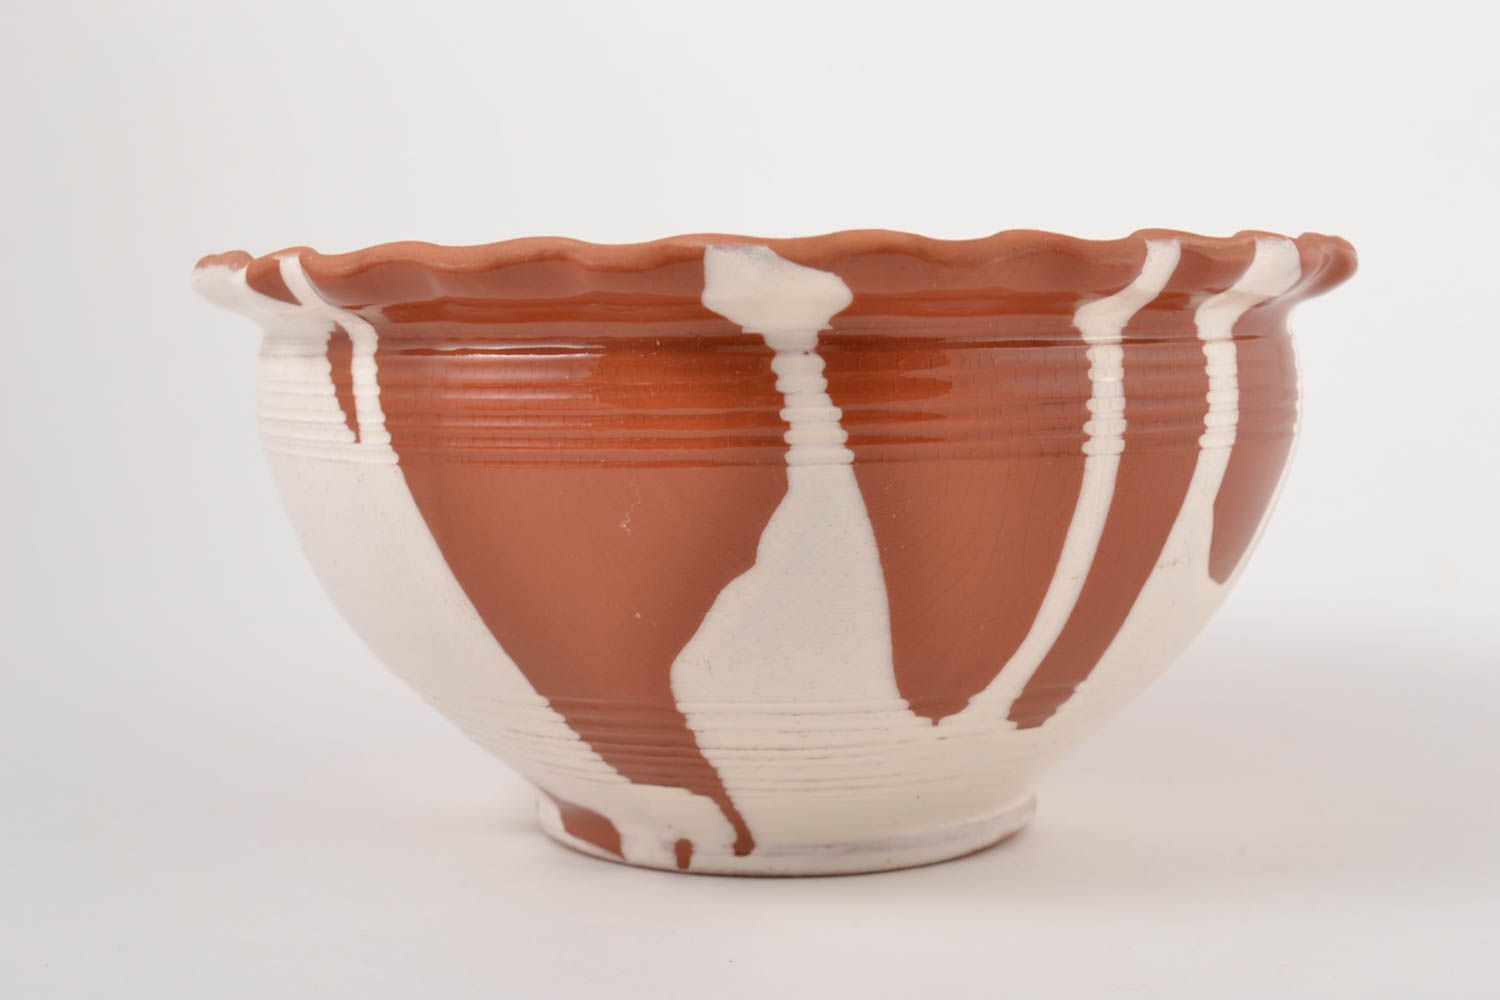 Küchen Geschirr Schüssel aus Ton handmade Schüssel Keramik tief groß praktisch foto 4